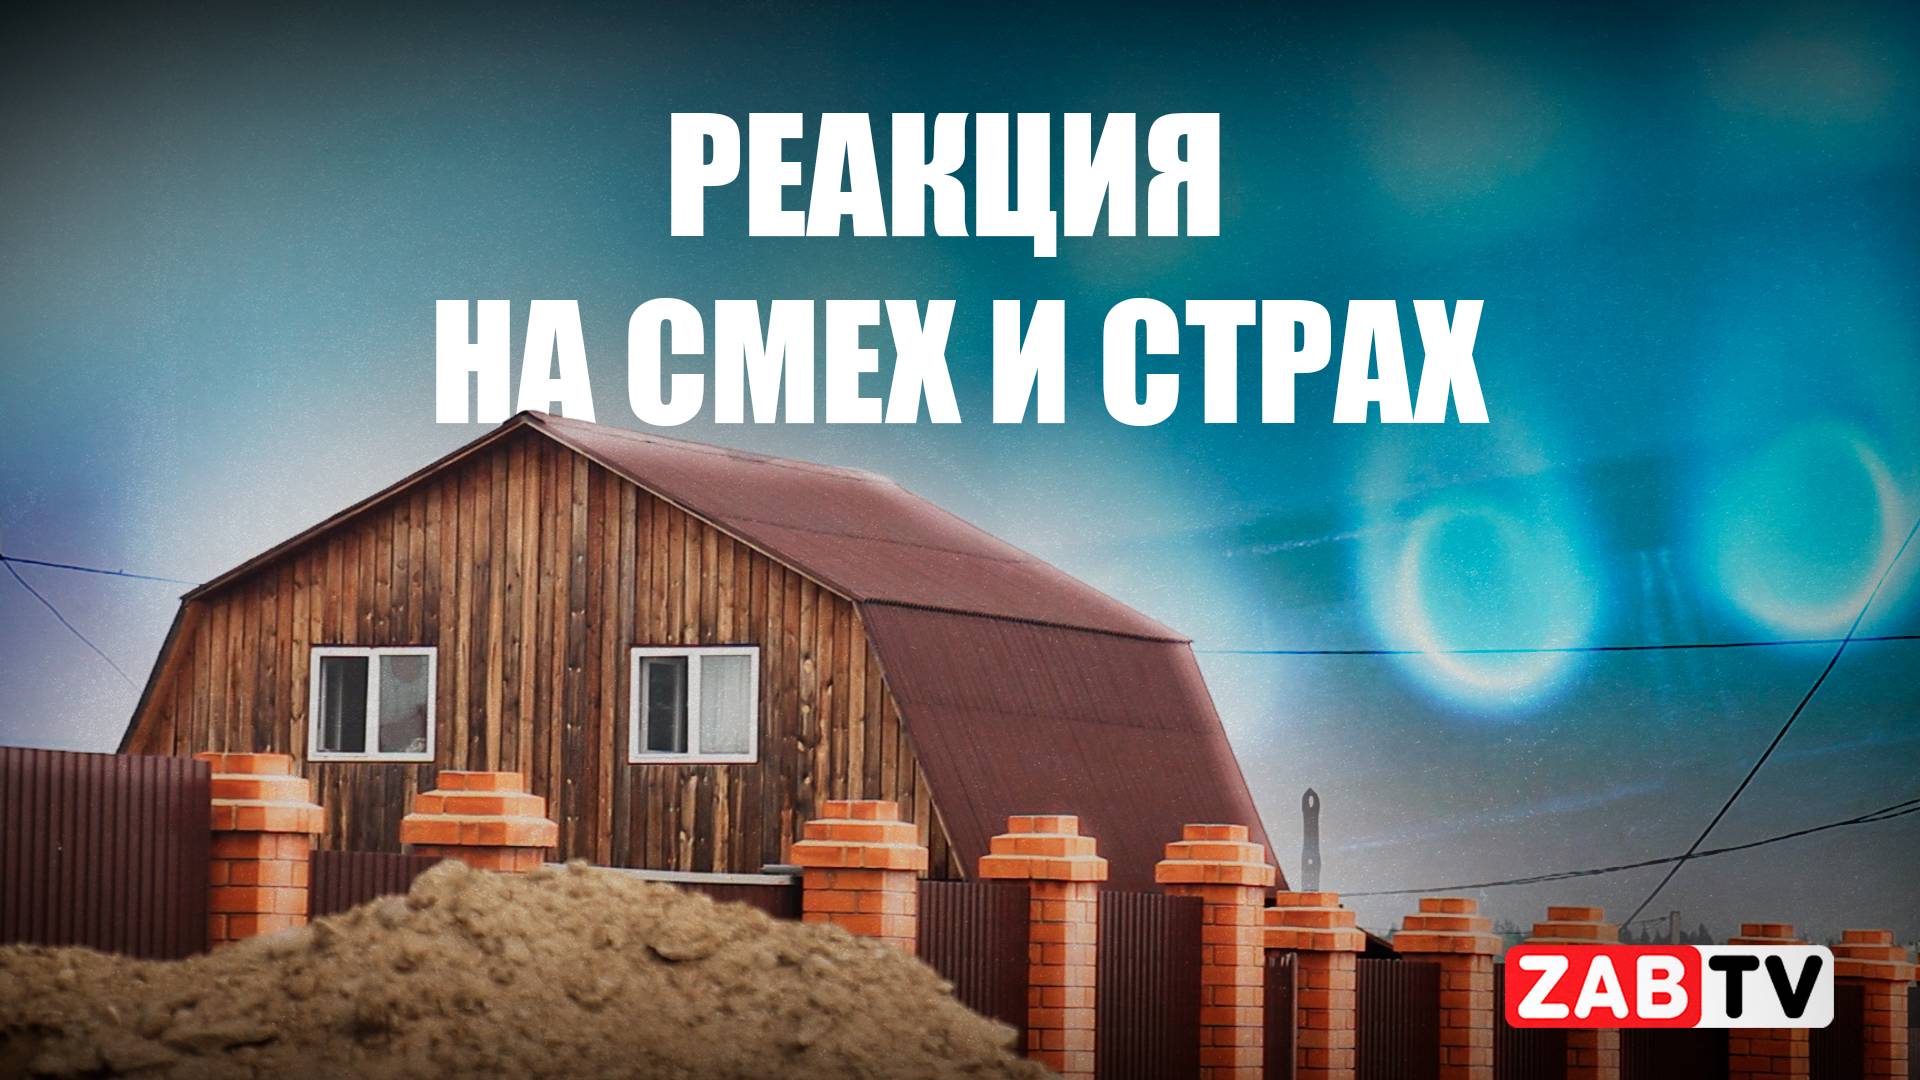 О причинах затянувшейся газификации в Черновском районе Читы